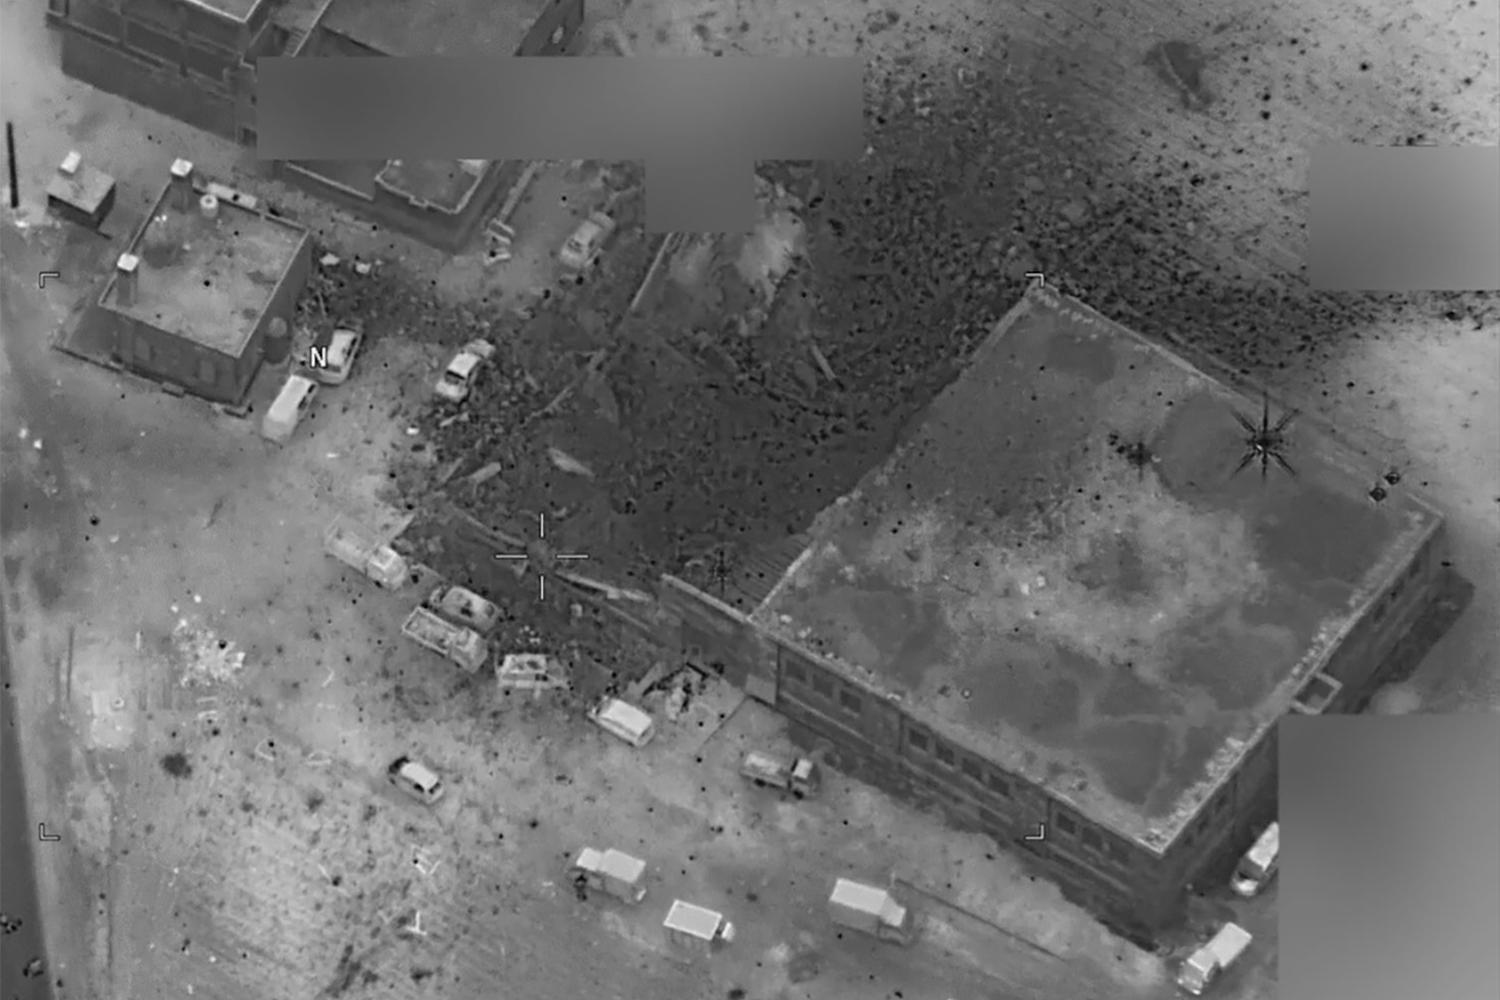 صورة جوية صادرة عن وزارة الدفاع الأمريكية بعد غارة جوية أمريكية في 16 مارس/آذار 2017 على الجينة، سوريا، تظهر الأضرار التي لحقت بجزء من مسجد. 